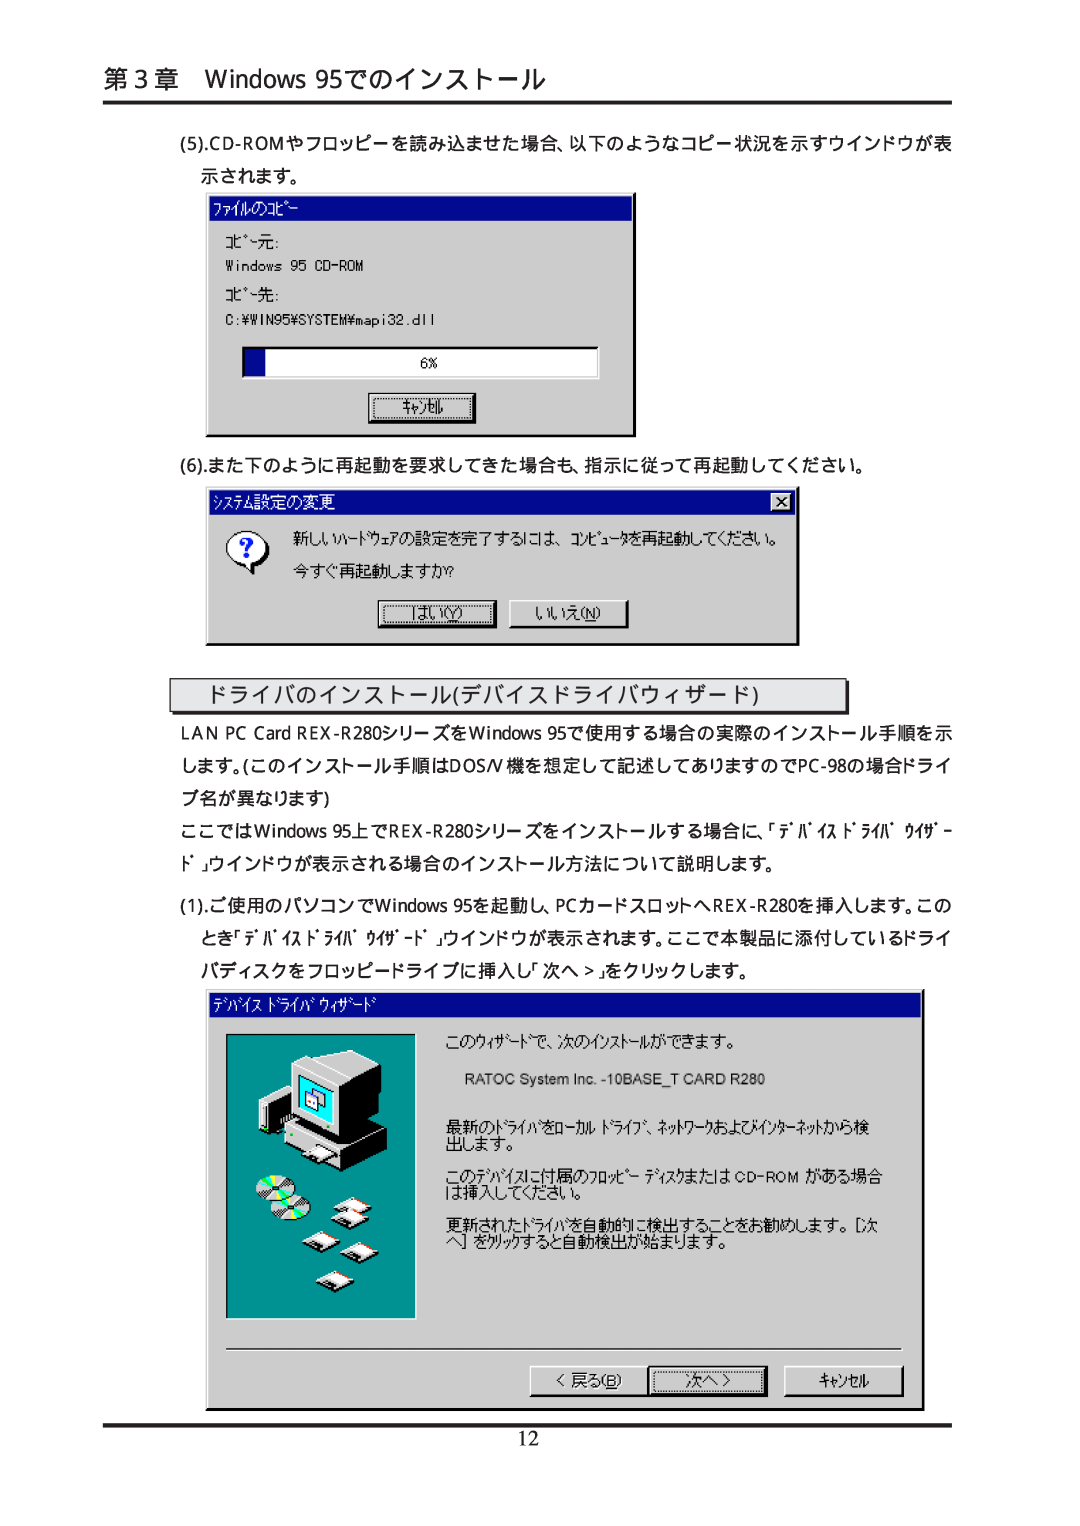 Ratoc Systems REX-R280 manual ドライバのインストールデバイスドライバウィザード, 第３章 Windows 95でのインストール 